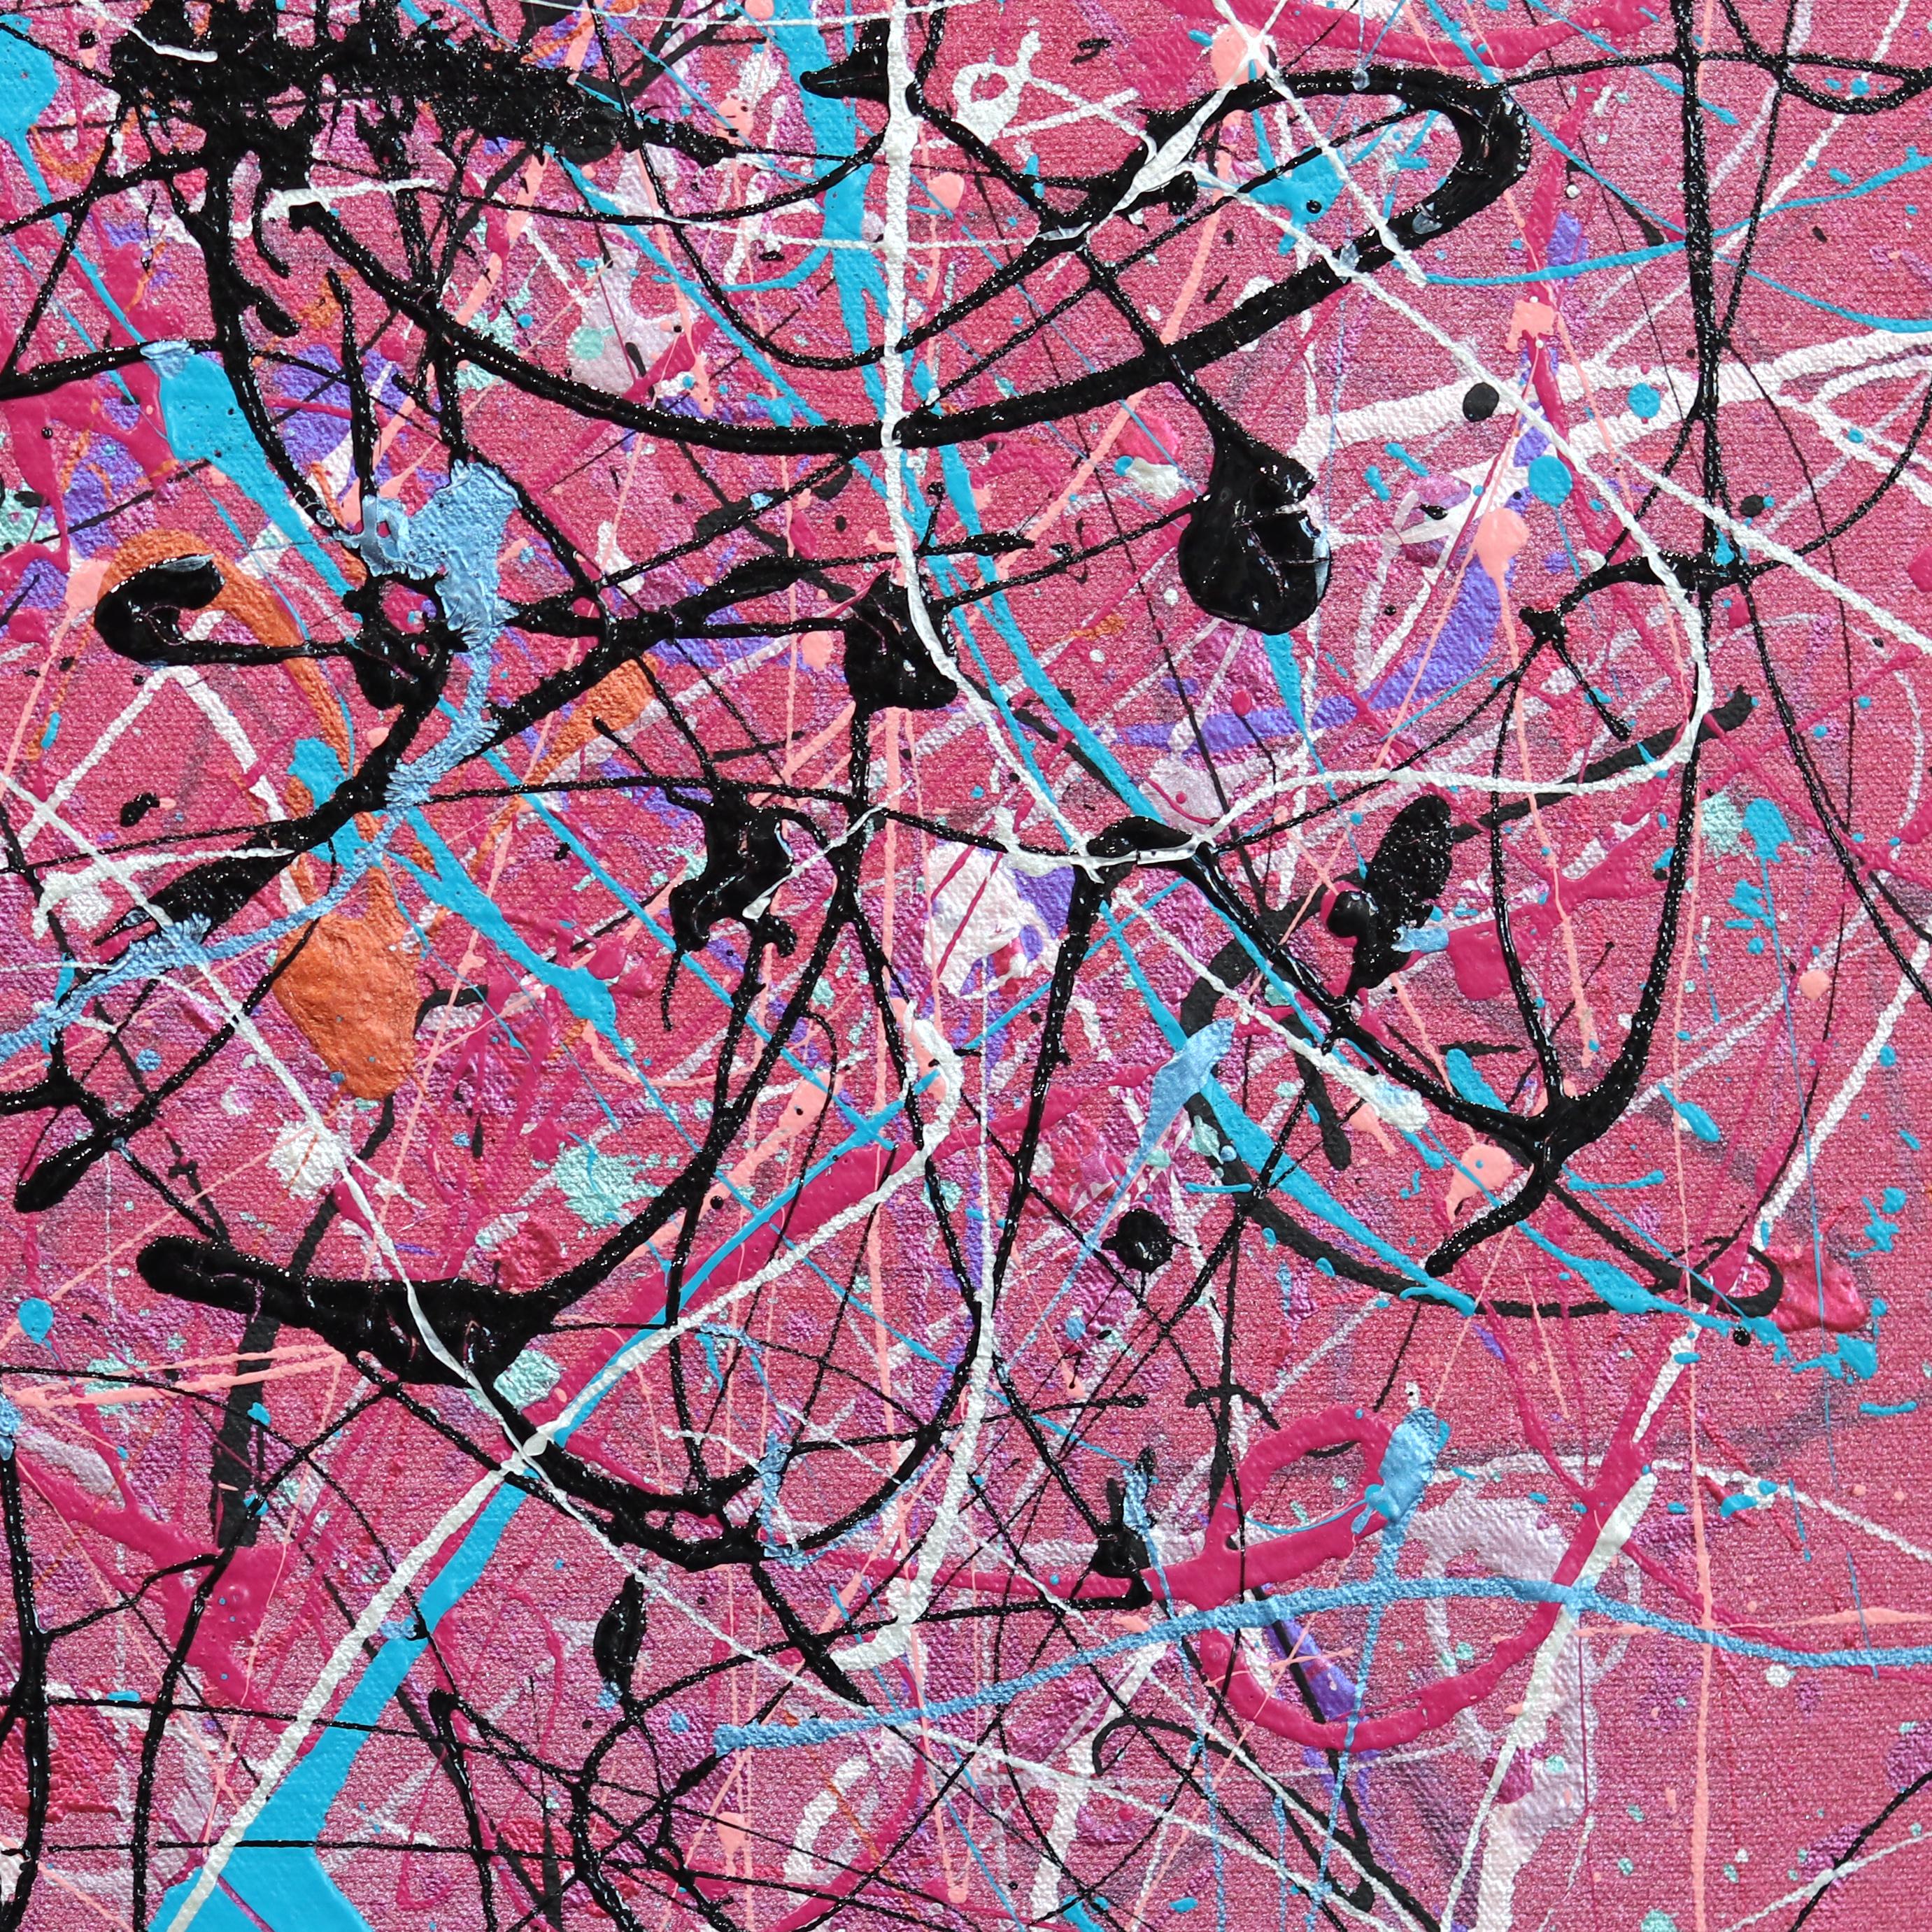 Cosmic Dance – farbenfrohes, einzigartiges, expressionistisches Aktionsgemälde (Abstrakter Expressionismus), Painting, von Marc Raphael